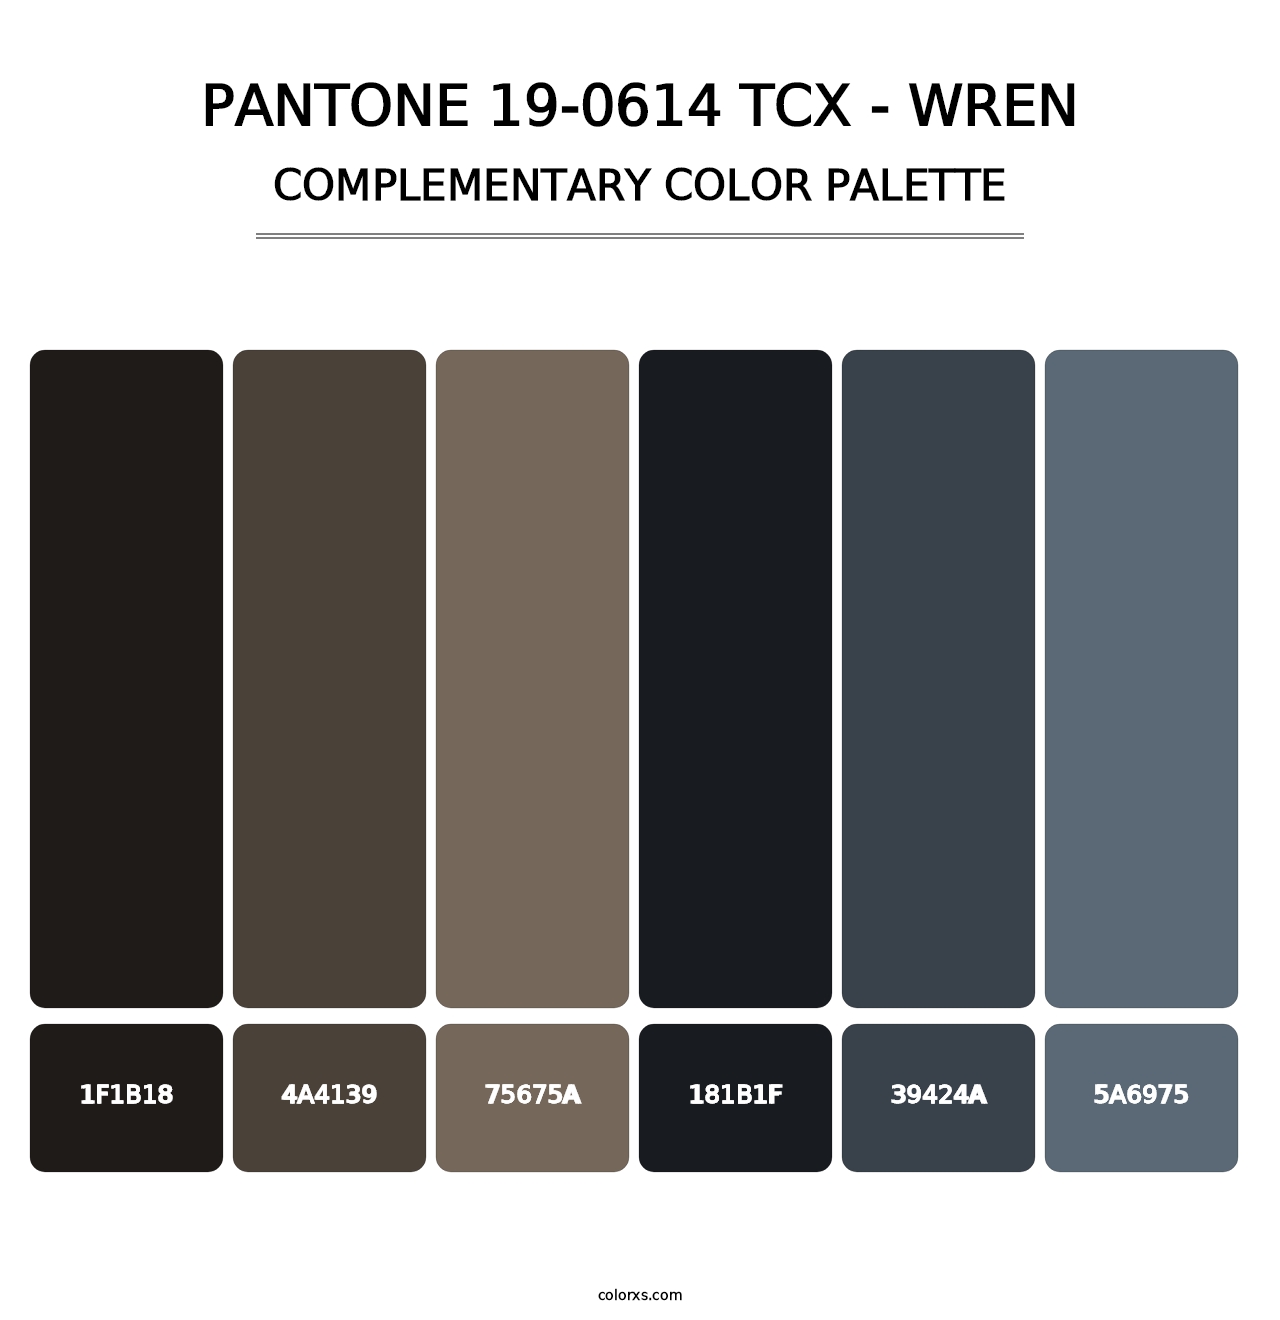 PANTONE 19-0614 TCX - Wren - Complementary Color Palette